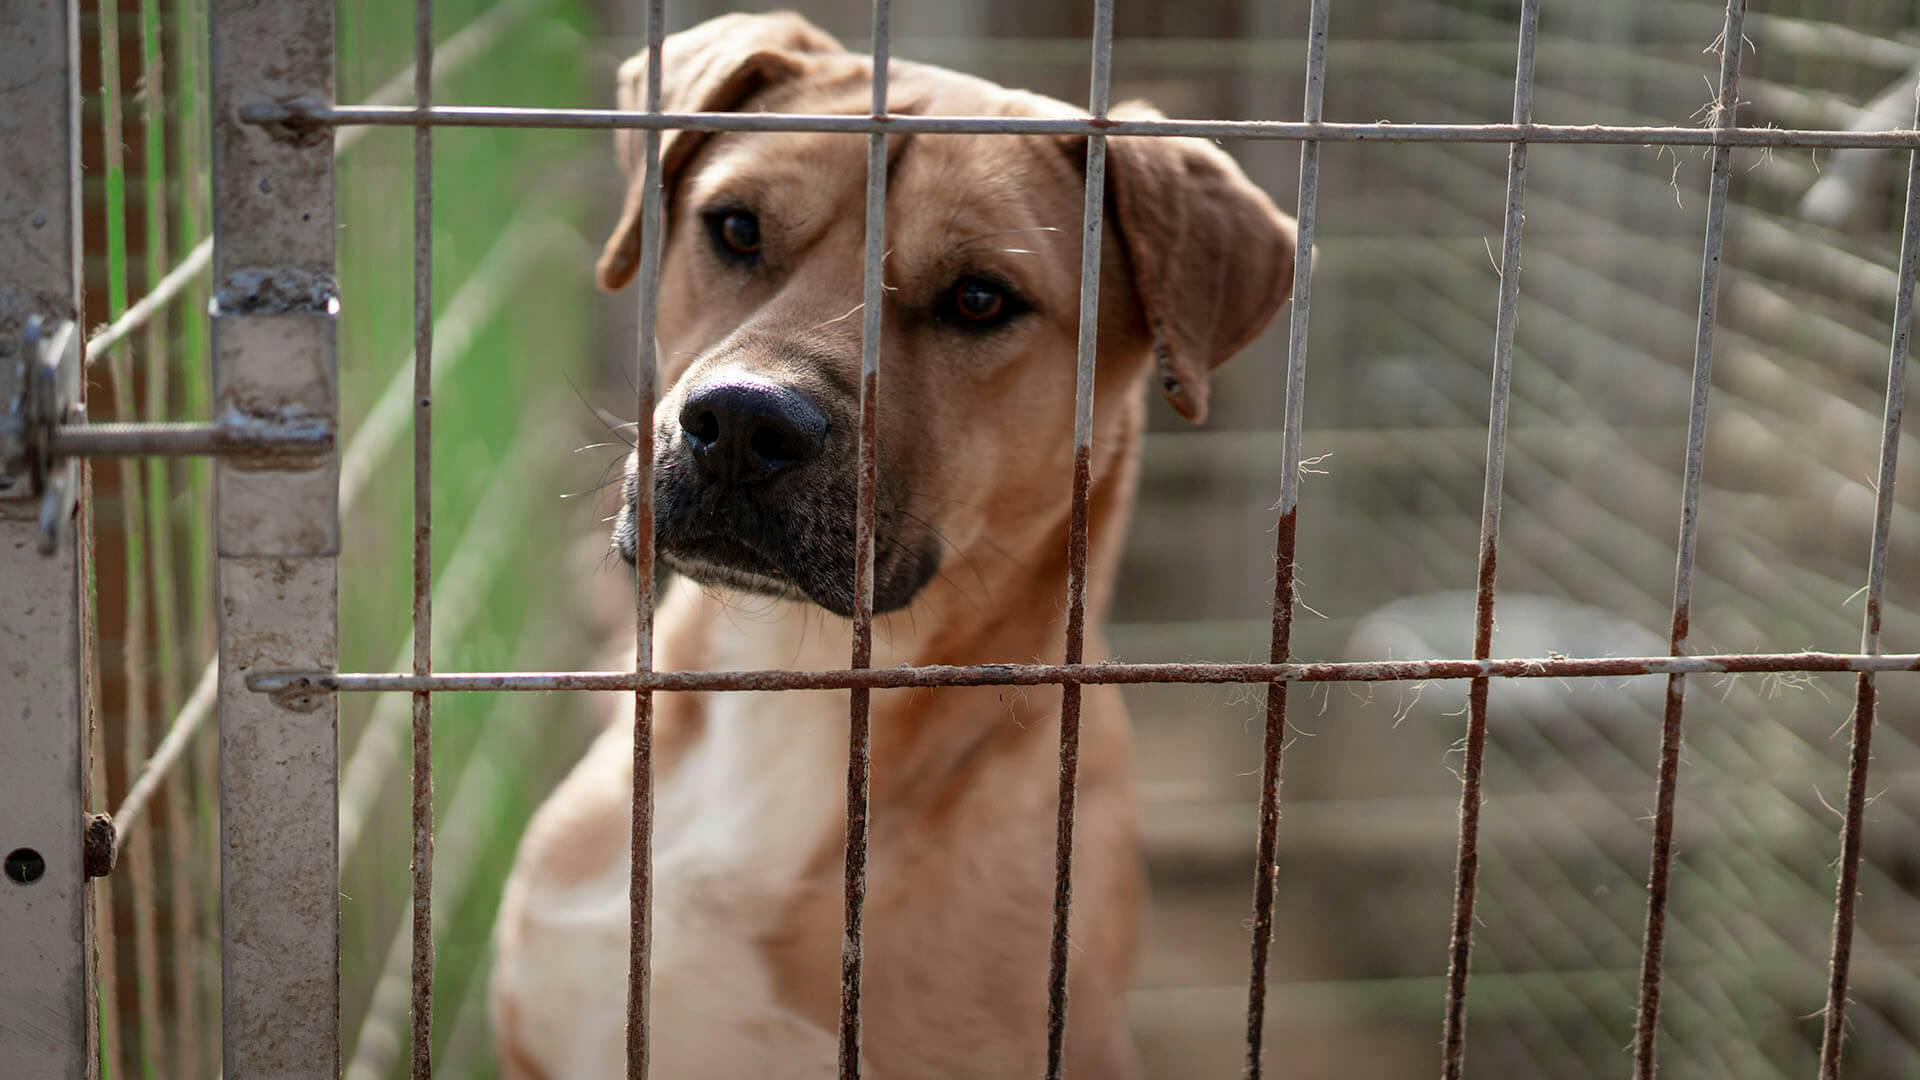 바깥 털은 황색, 가슴 안쪽의 털은 흰색인 개가 철망 너머를 바라보고 있다.